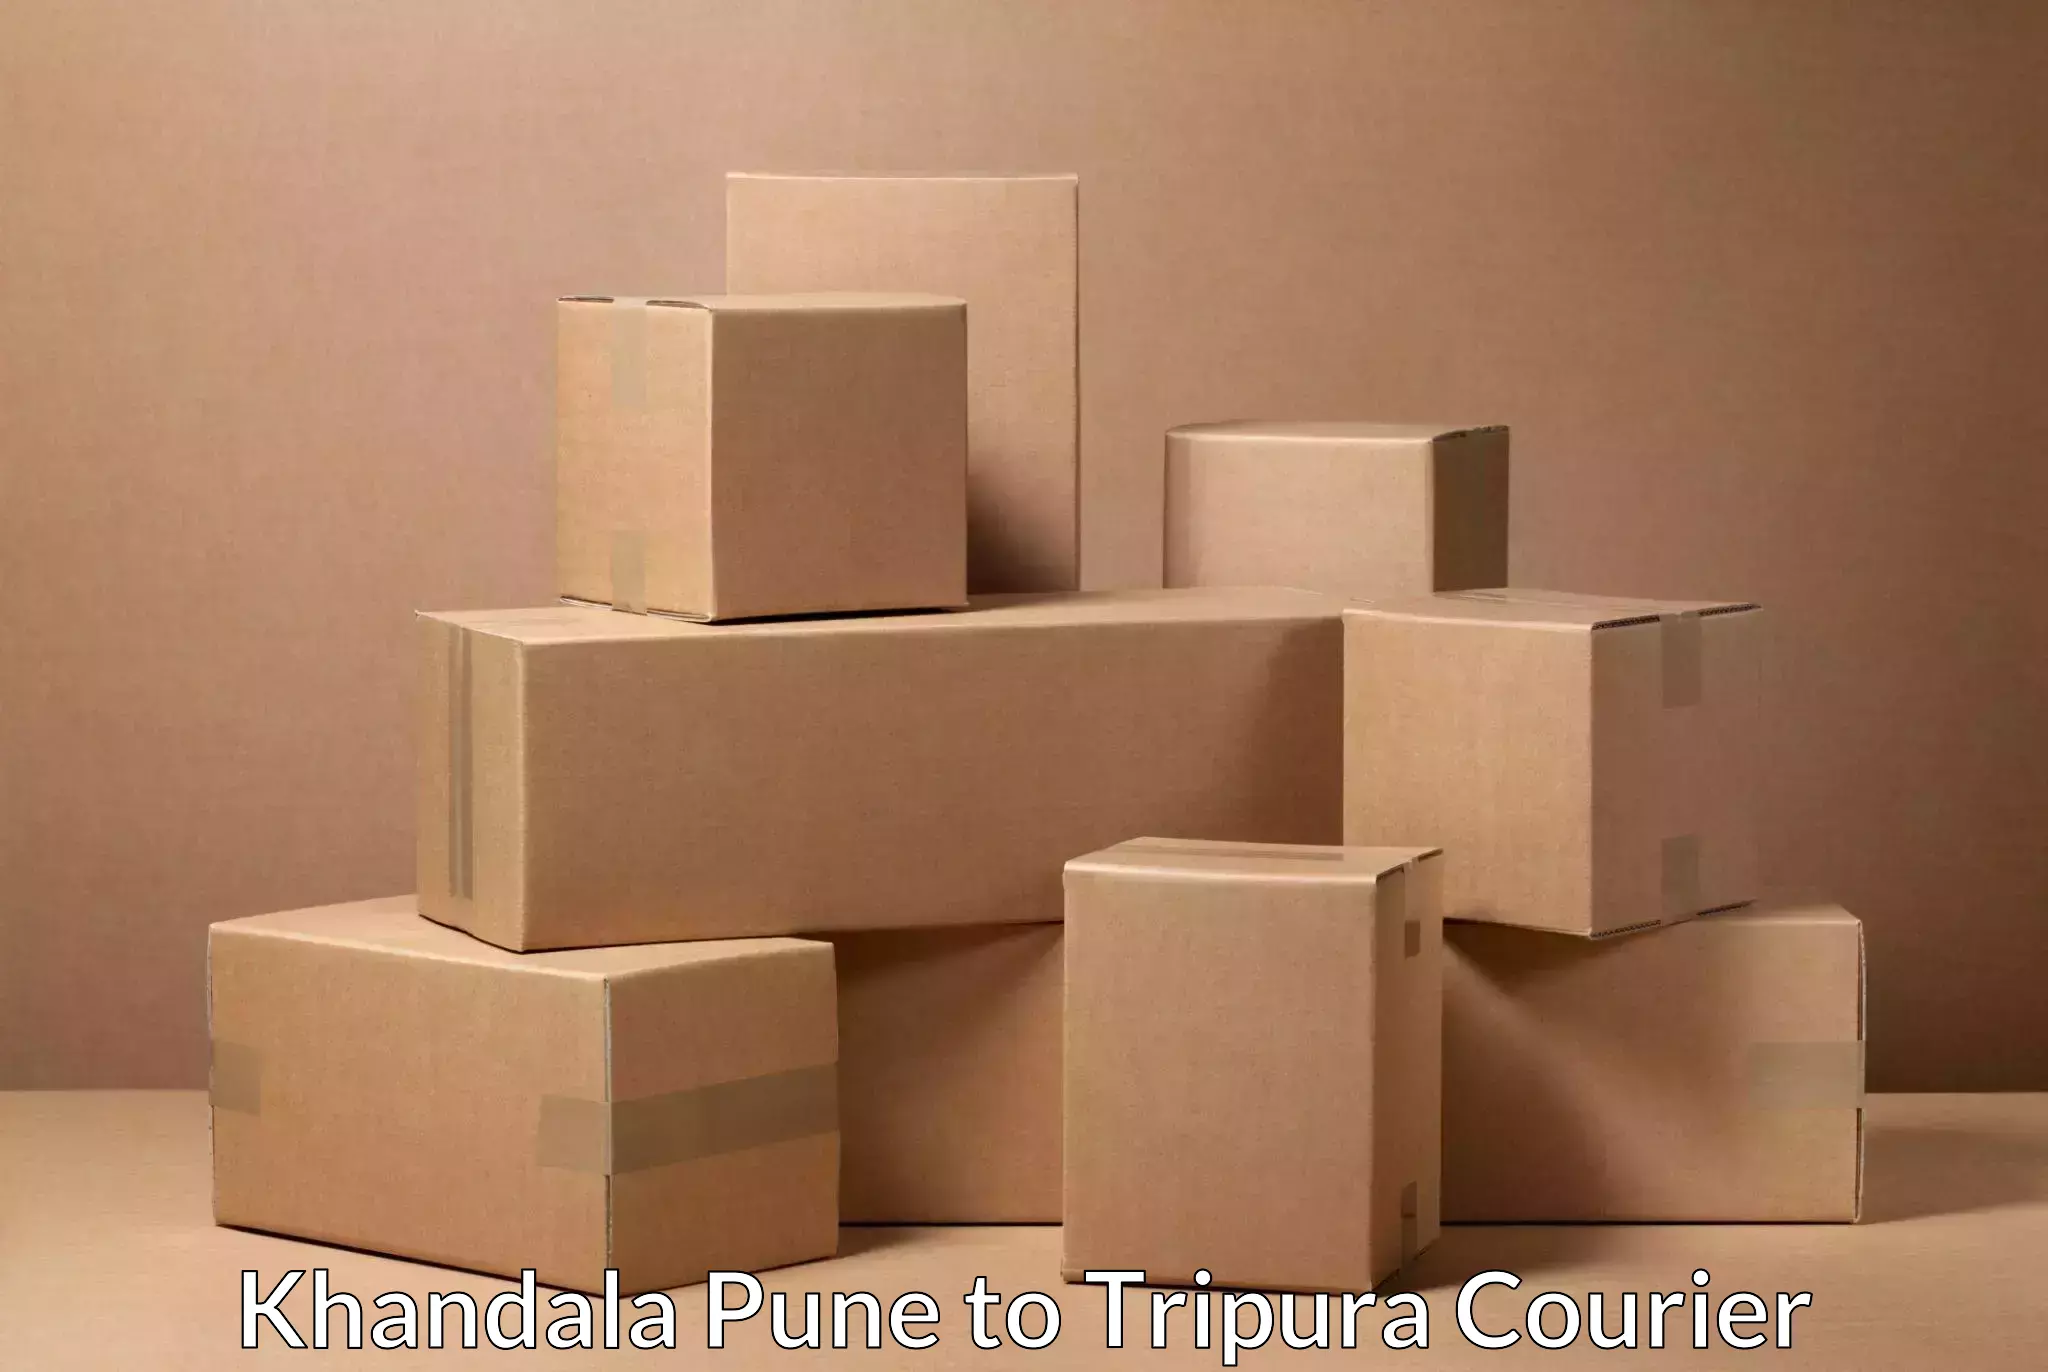 Large-scale shipping solutions Khandala Pune to Sonamura